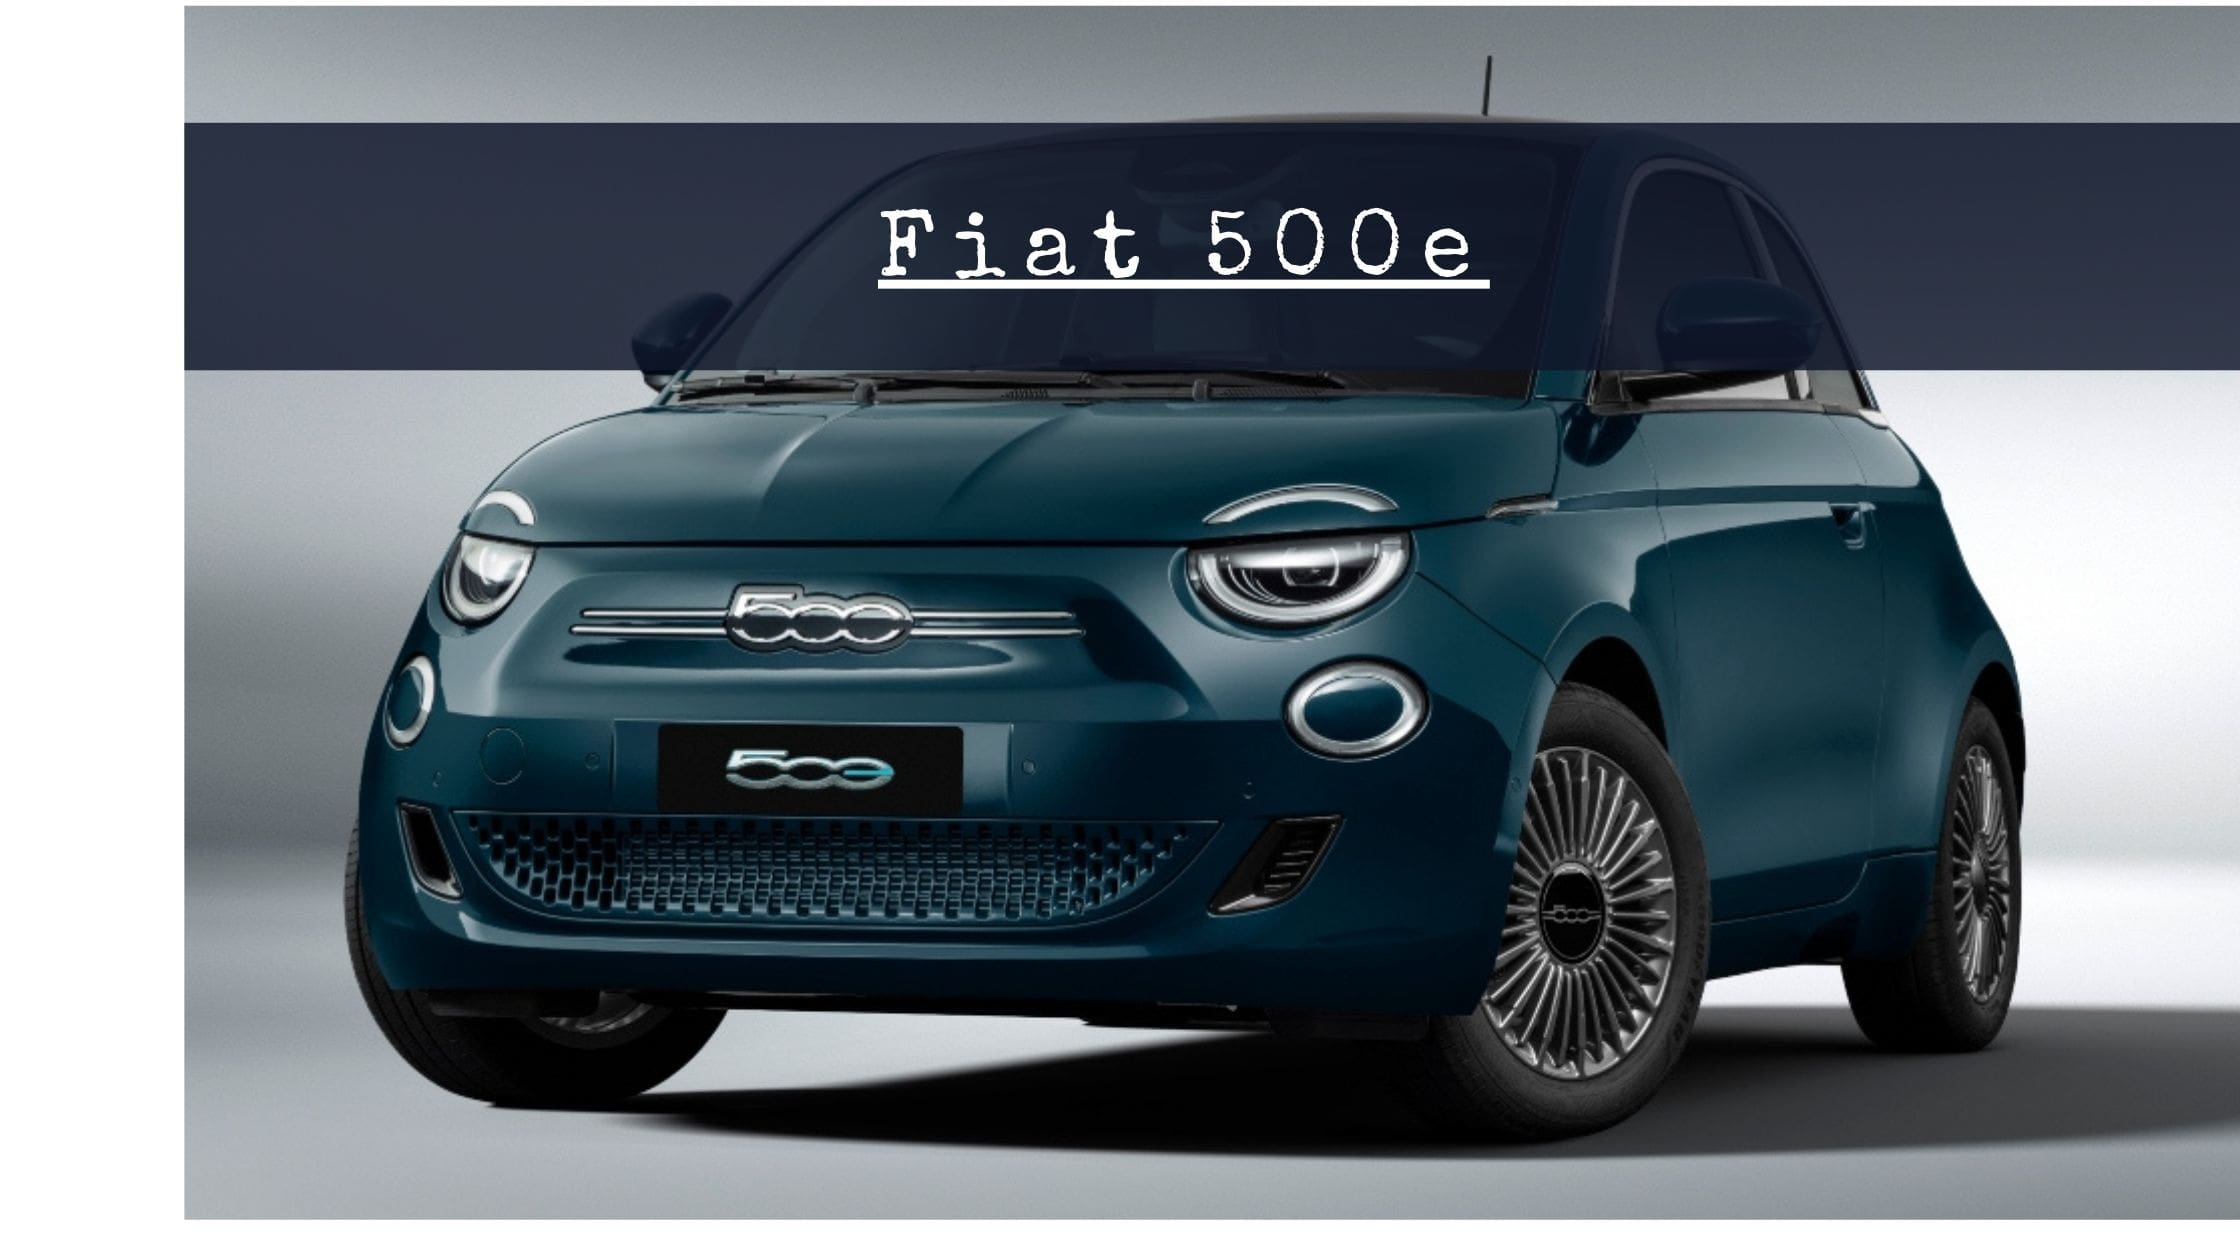 Review al nuevo Fiat 500e